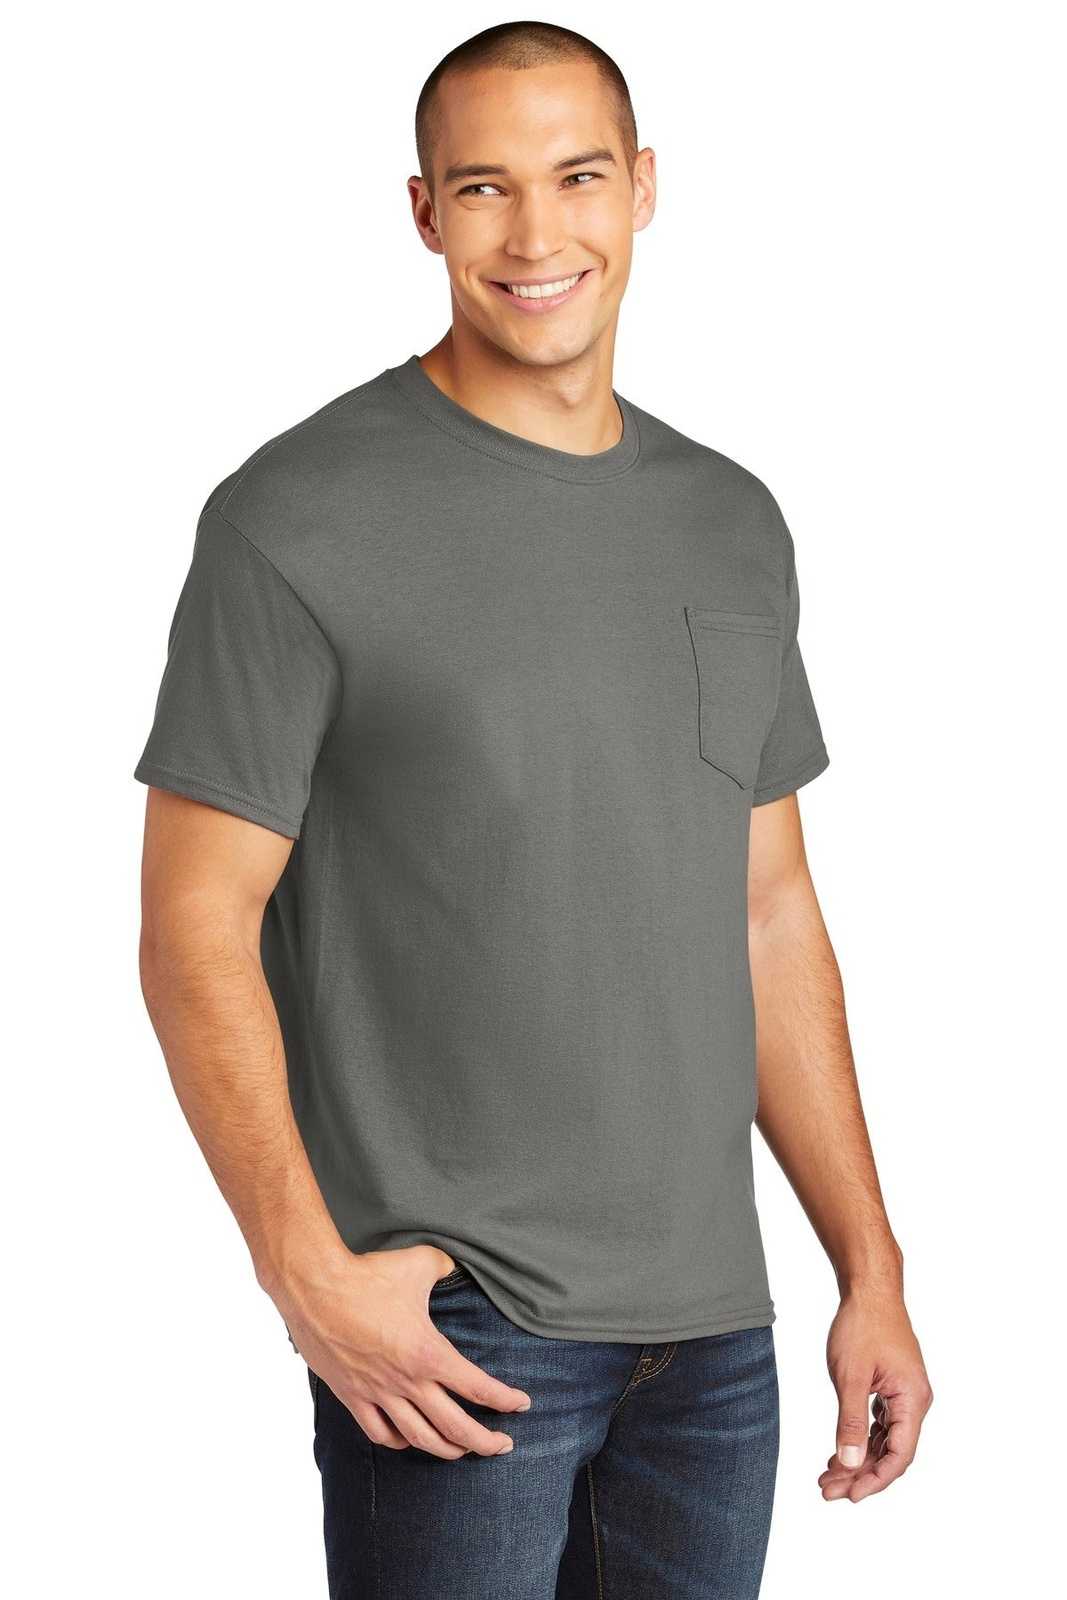 Gildan 5300 Heavy Cotton 100% Cotton Pocket T-Shirt - Charcoal - HIT a Double